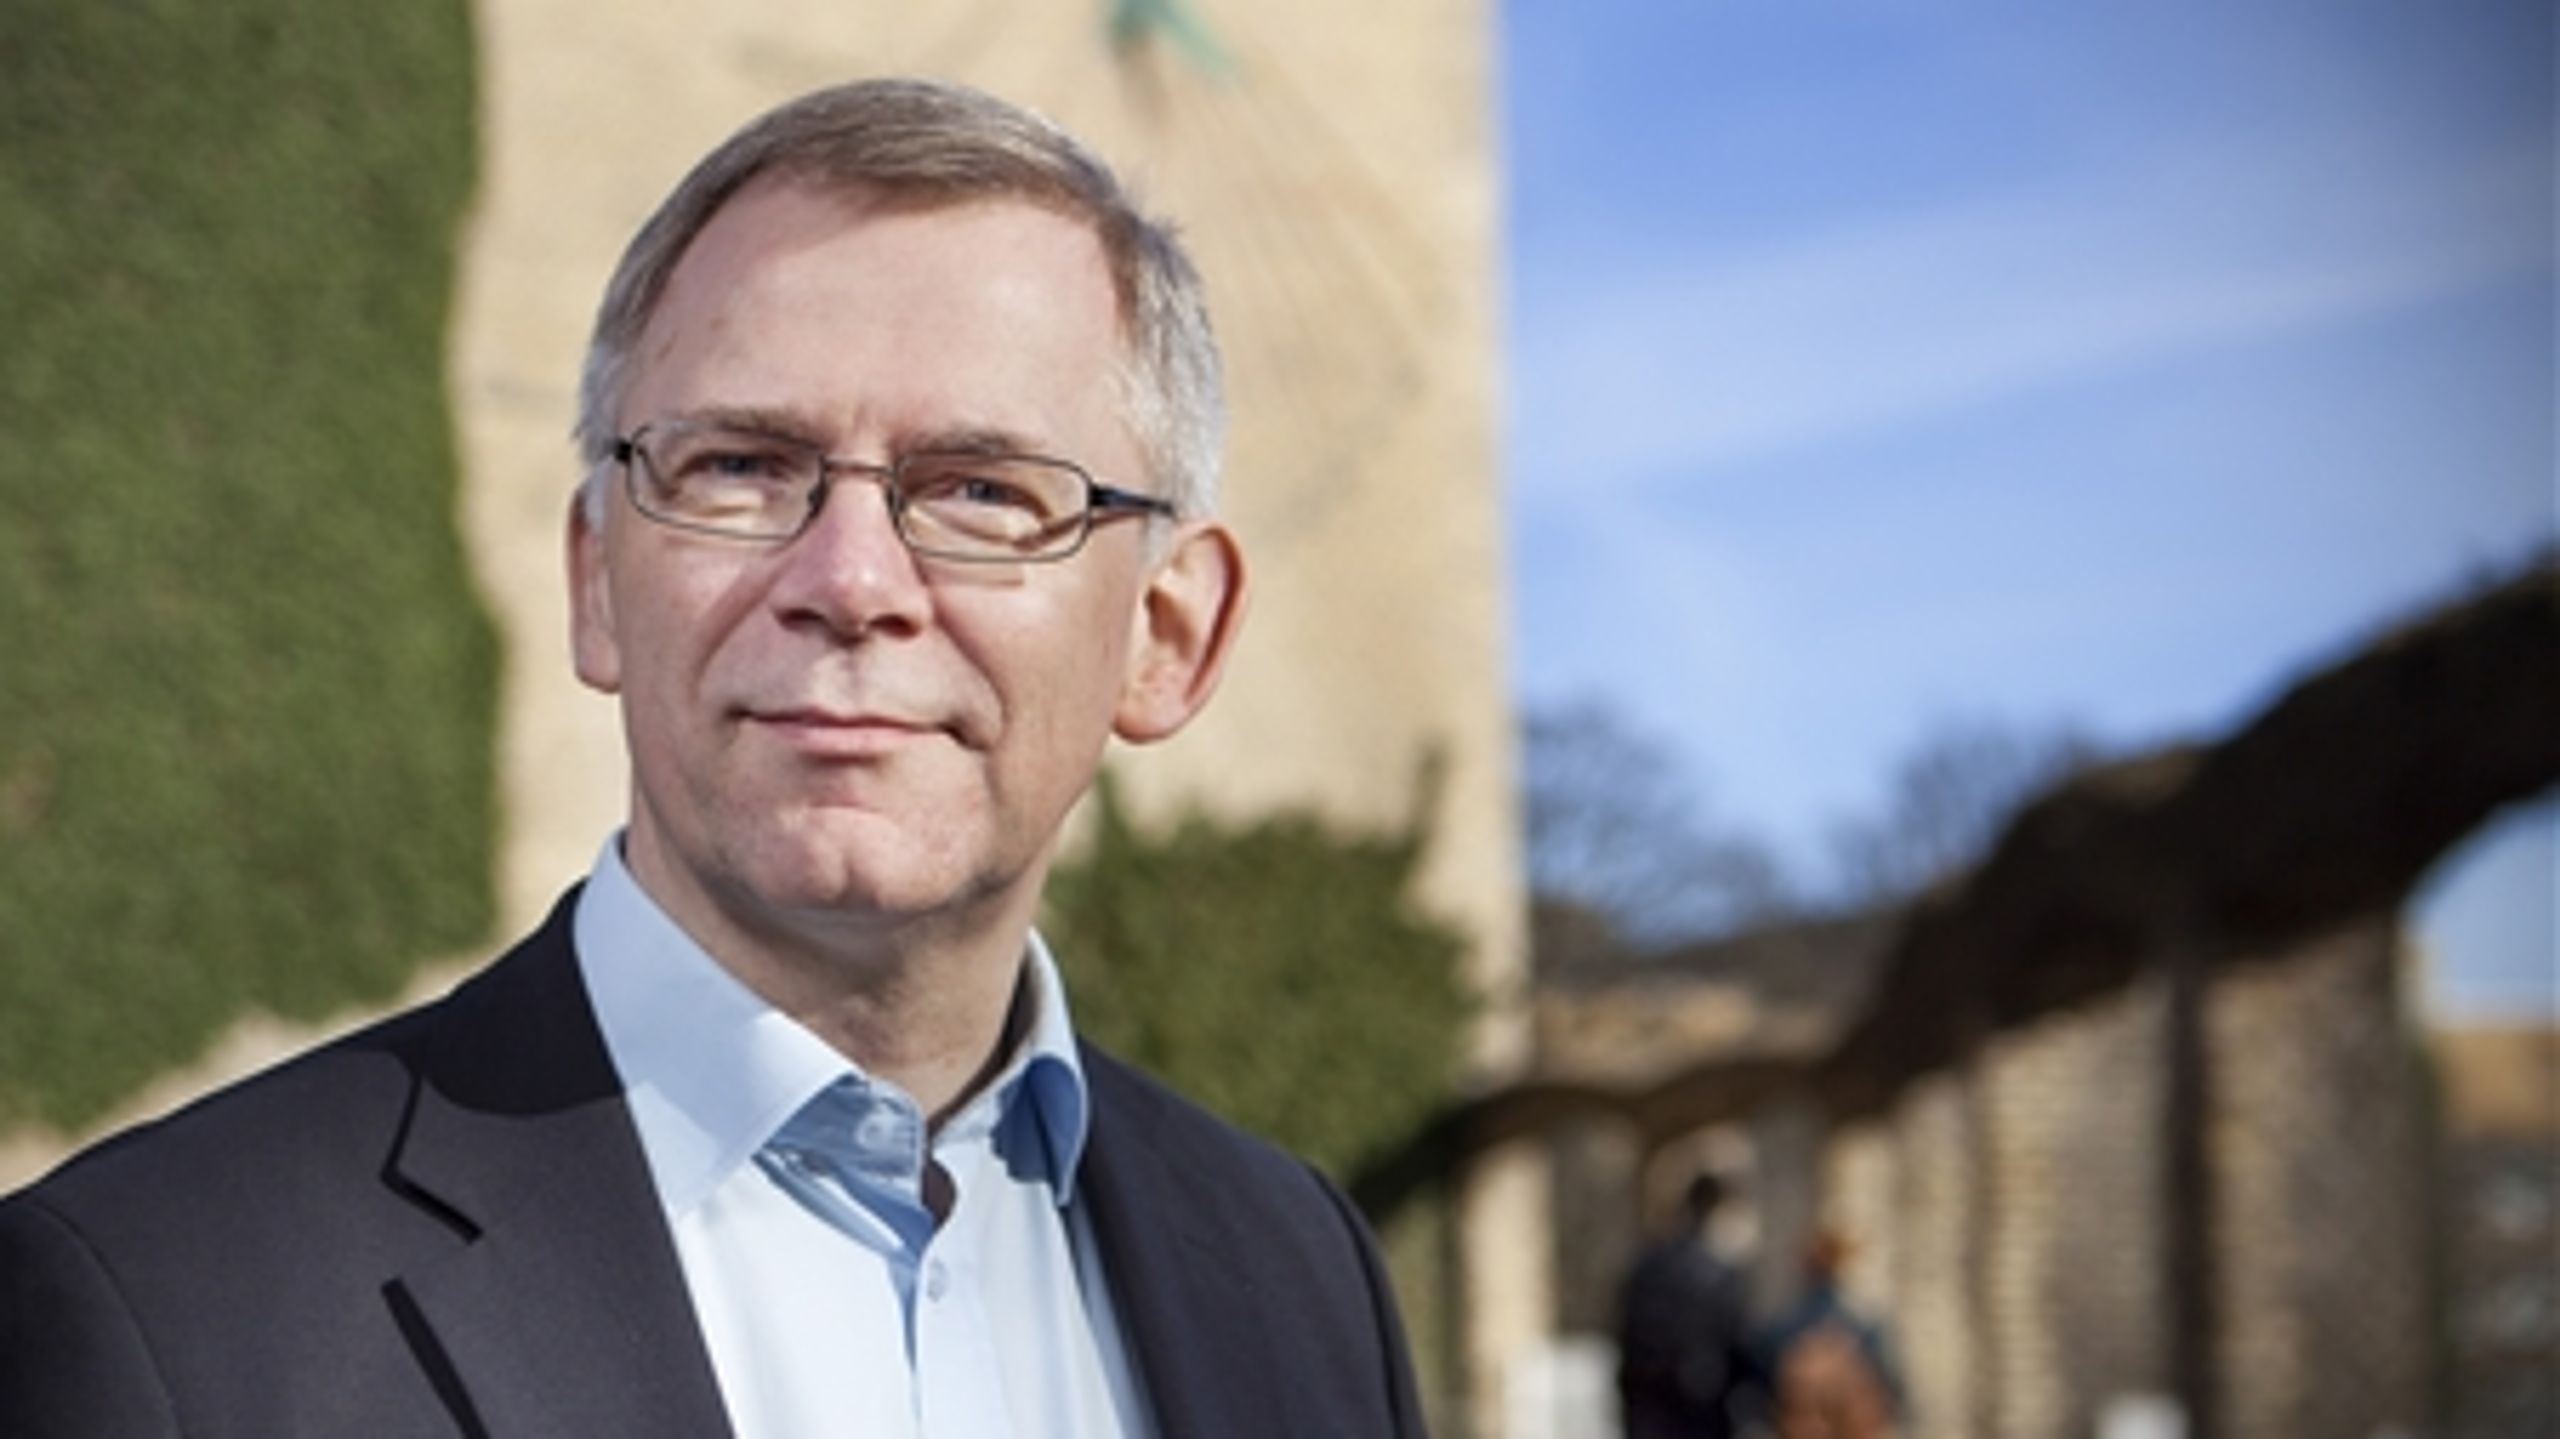 Rektor Brian Bech Nielsen på Aarhus Universitet vil sætte sig ind i detaljerne i analyser af universitetets organisatoriske problemer, inden han efter sommerferien er klar til at spille ud med løsningsforslag.